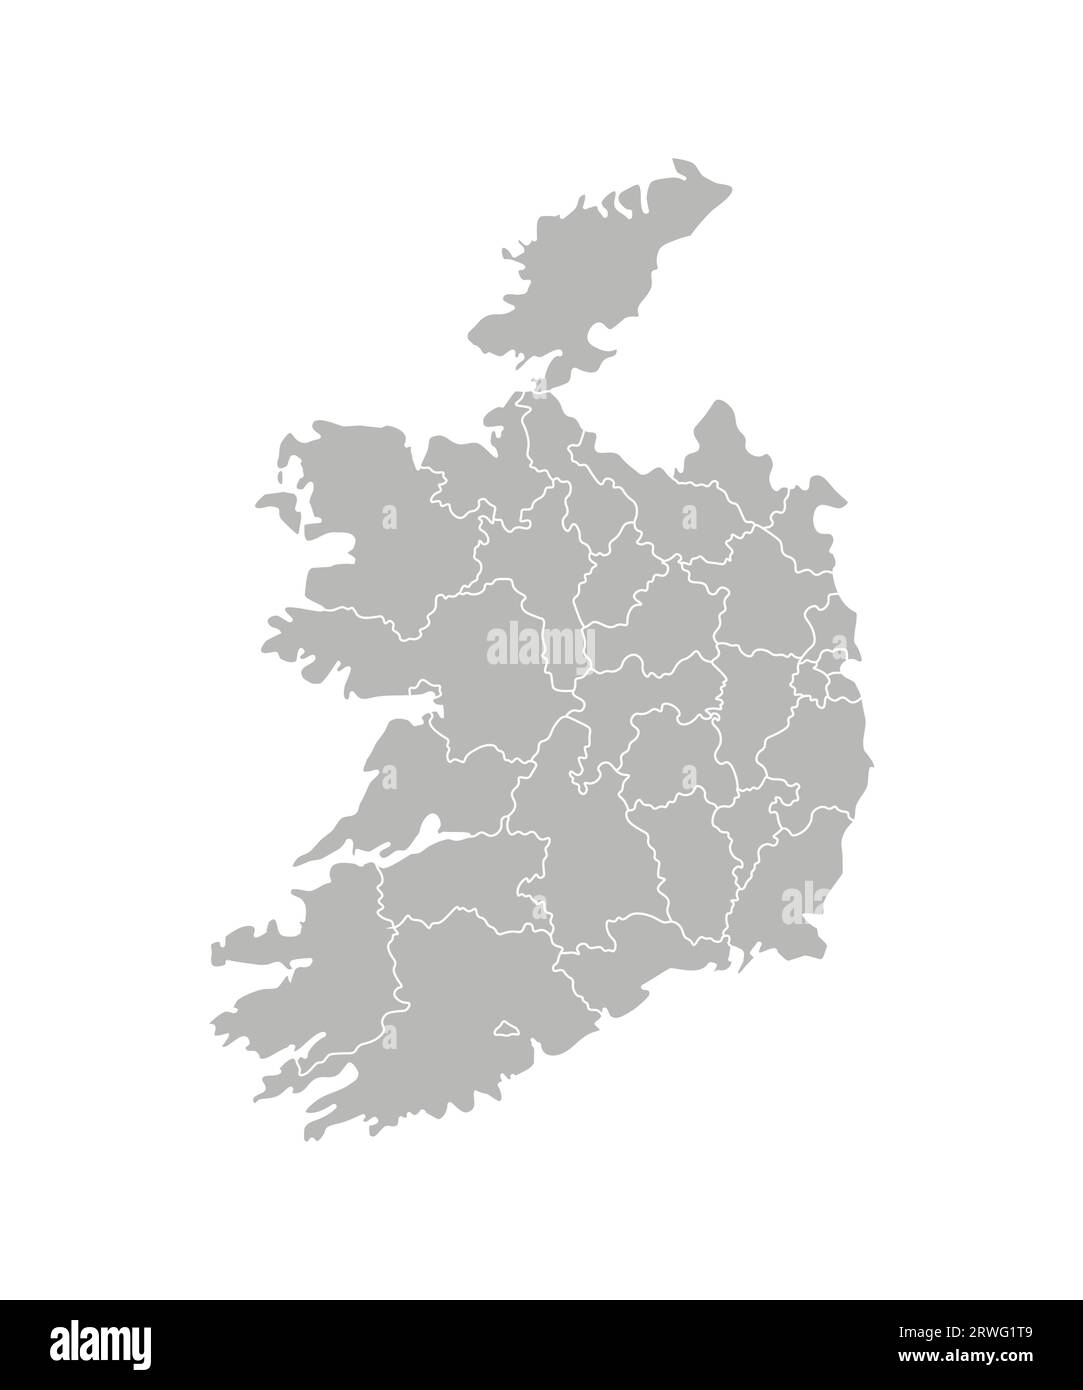 Vektorisolierte Illustration einer vereinfachten Verwaltungskarte der Republik Irland. Grenzen der Provinzen (Regionen). Graue Silhouetten. Weiß Stock Vektor